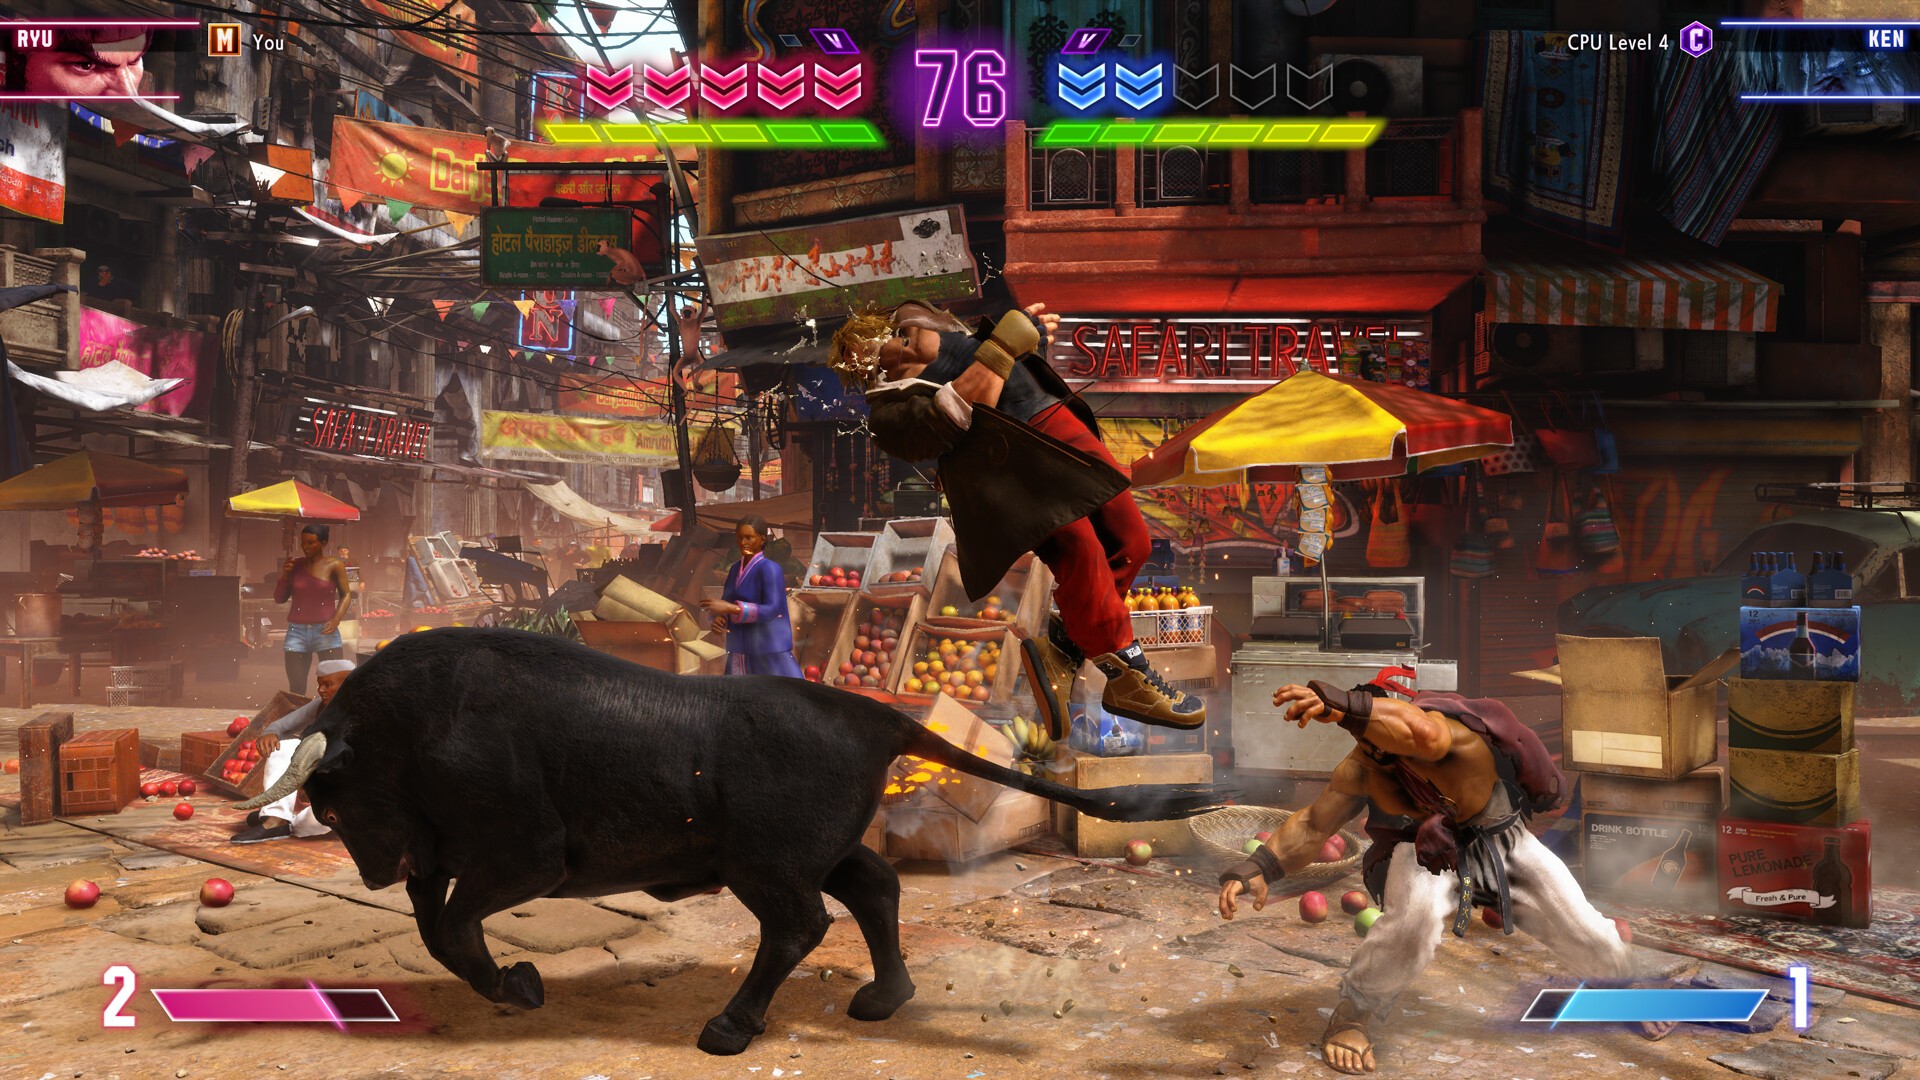 Street Fighter 6 + Preorder Bonus